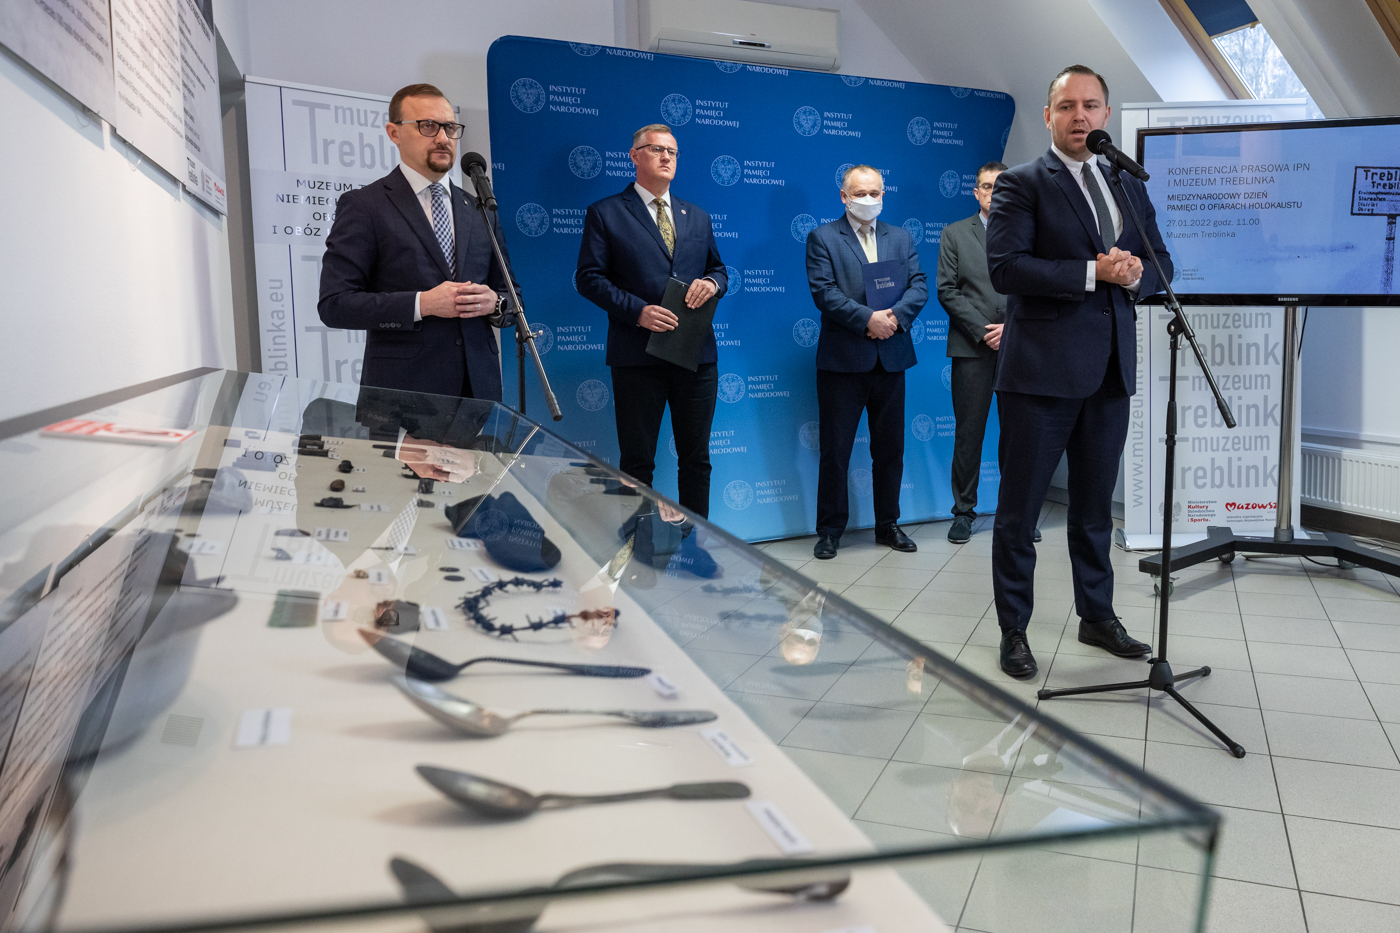 Konferencja prasowa dotycząca przekazania Muzeum w Treblince przedmiotów należących do zamordowanych w Miejscu Straceń w pobliżu Karnego Obozu Pracy Treblinka I – 27 stycznia 2022. Fot. Mikołaj Bujak (IPN)